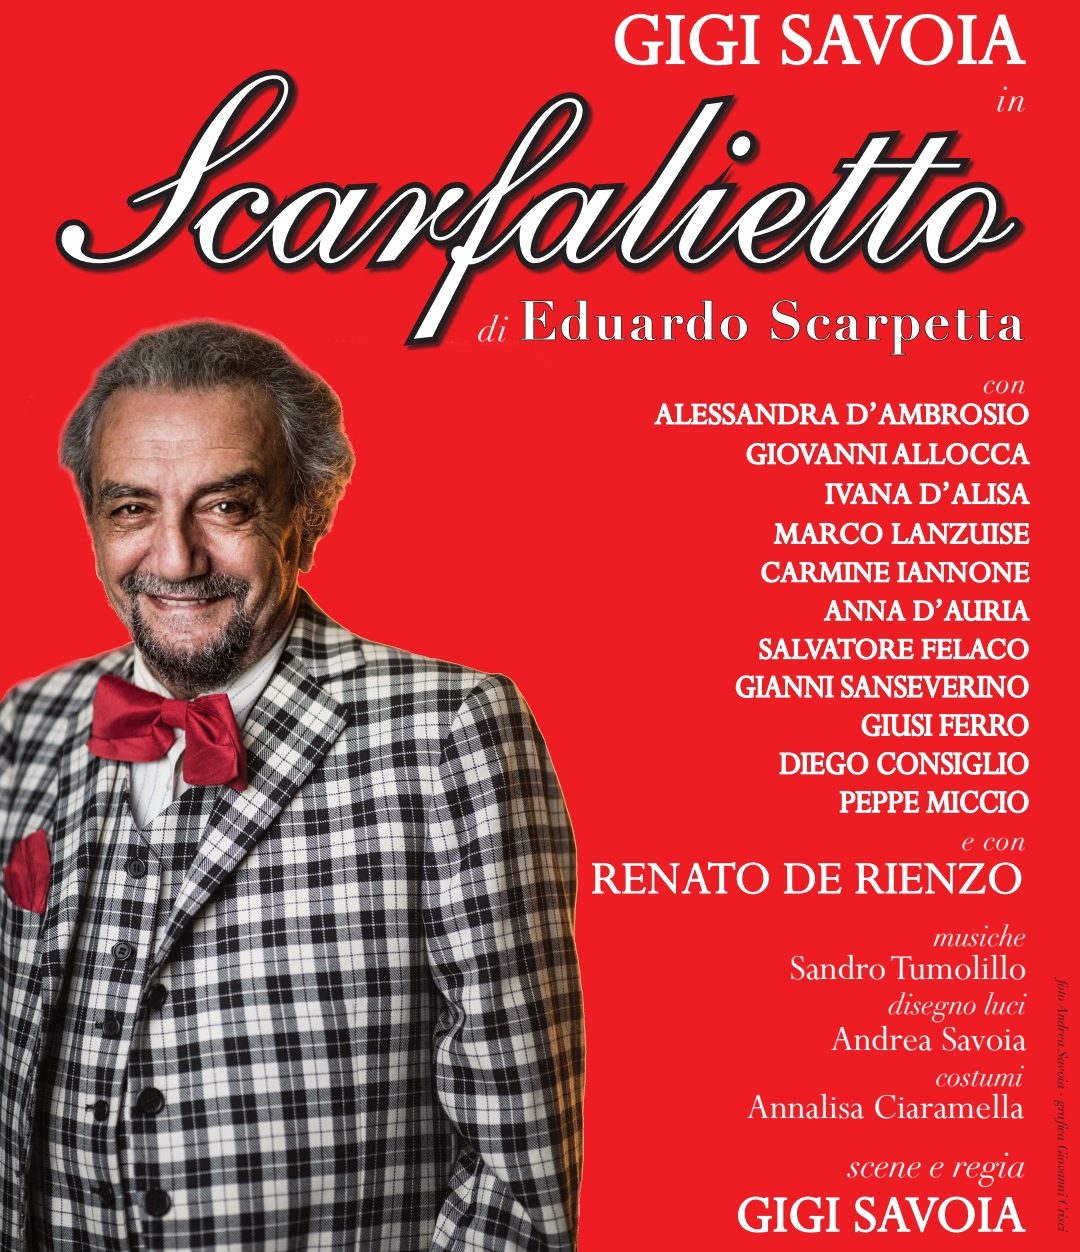 Gigi Savoia apre la nuova stagione teatrale a Casamarciano con ‘Lo Scarfalietto’